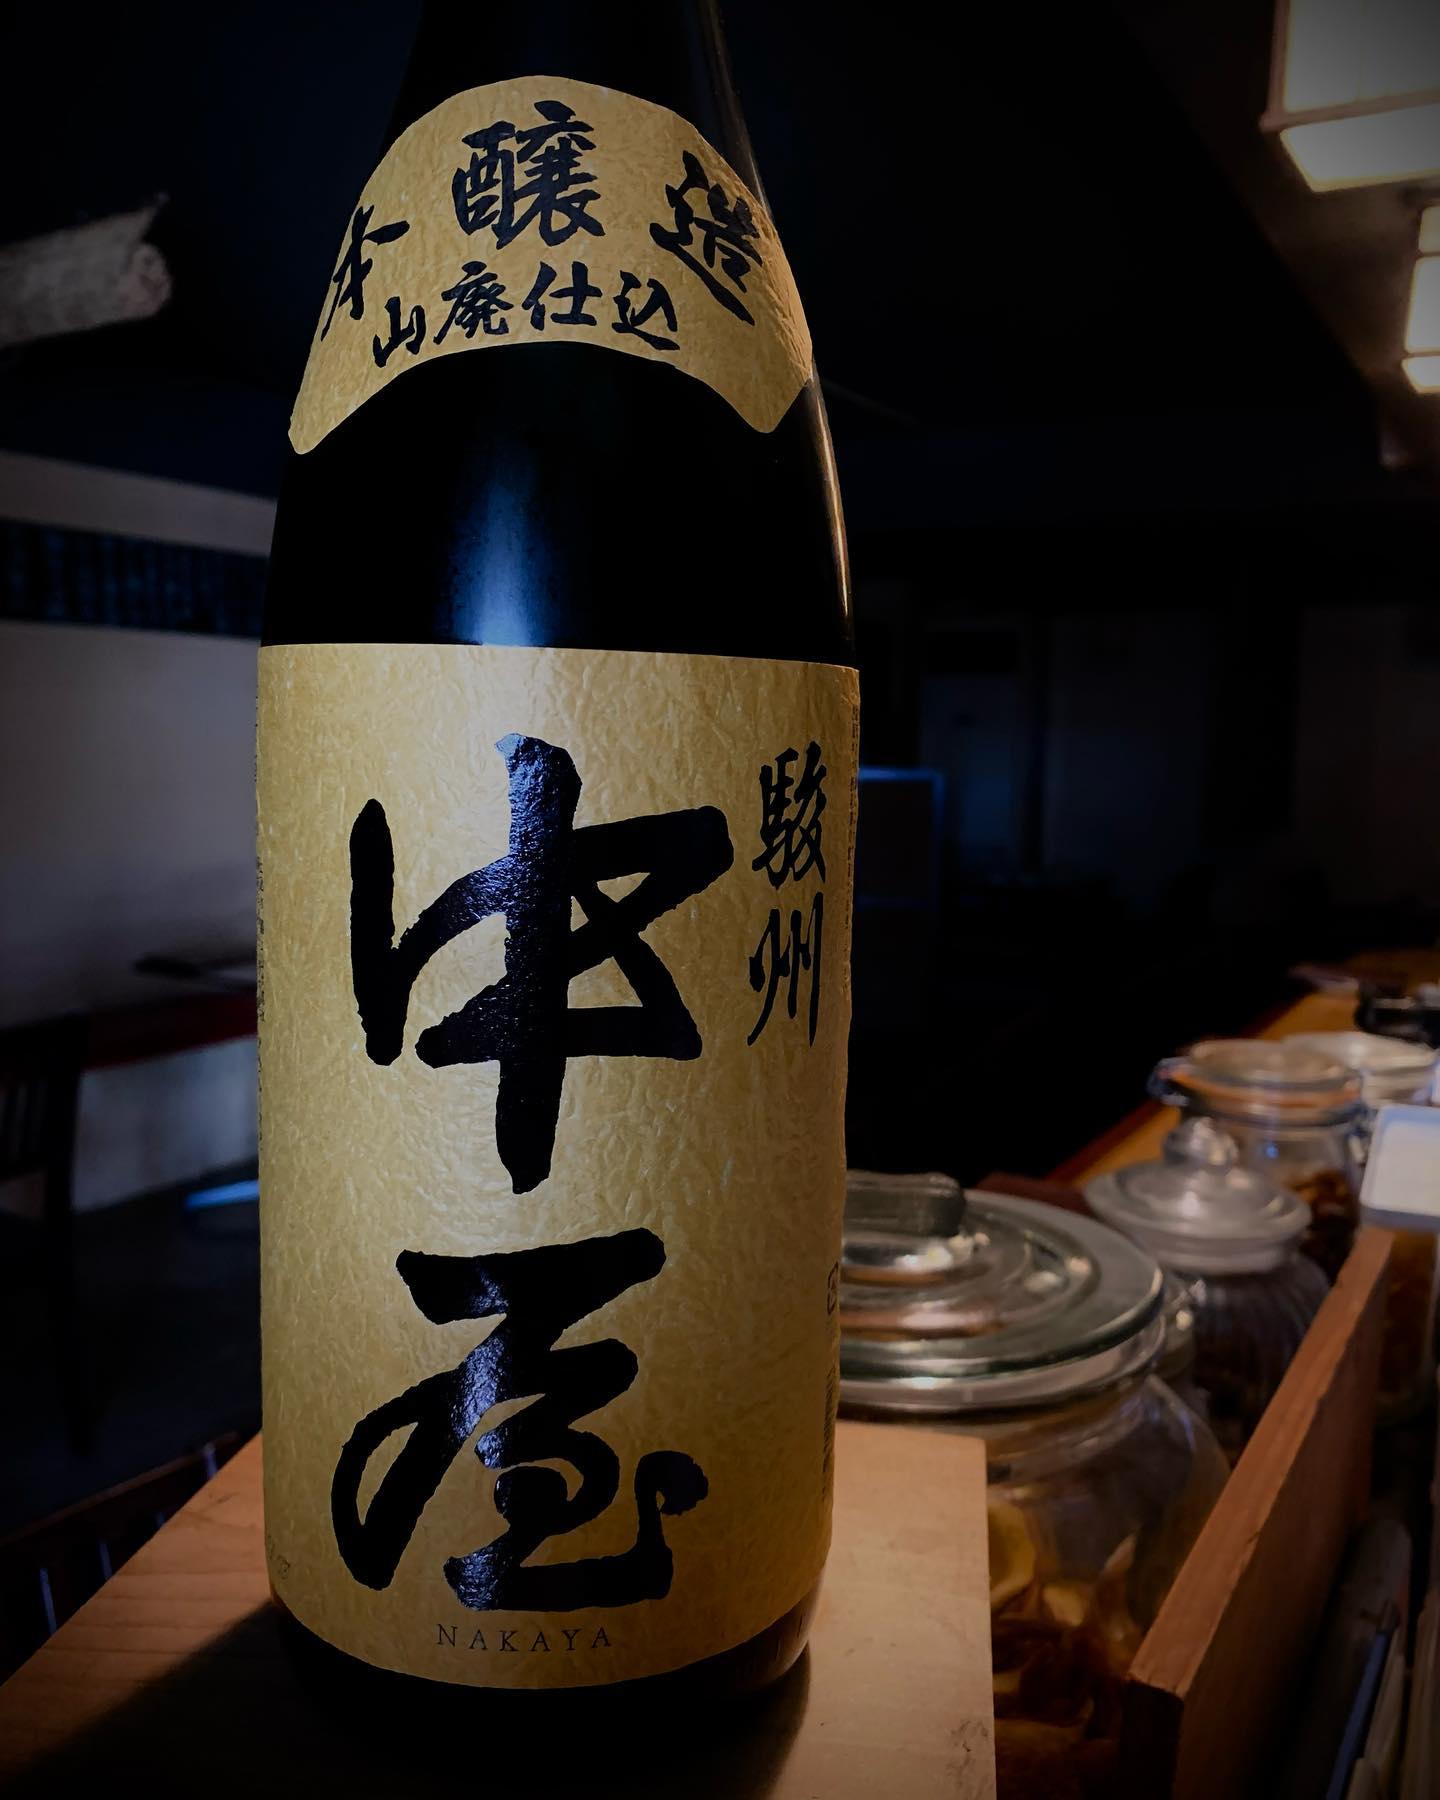 本日の日本酒紹介️
「中屋」

山廃仕込み独特のコクと
本醸造ならではのキレの良さが見事にマッチ。
このクセのある日本酒ぜひお試しあれ
    #